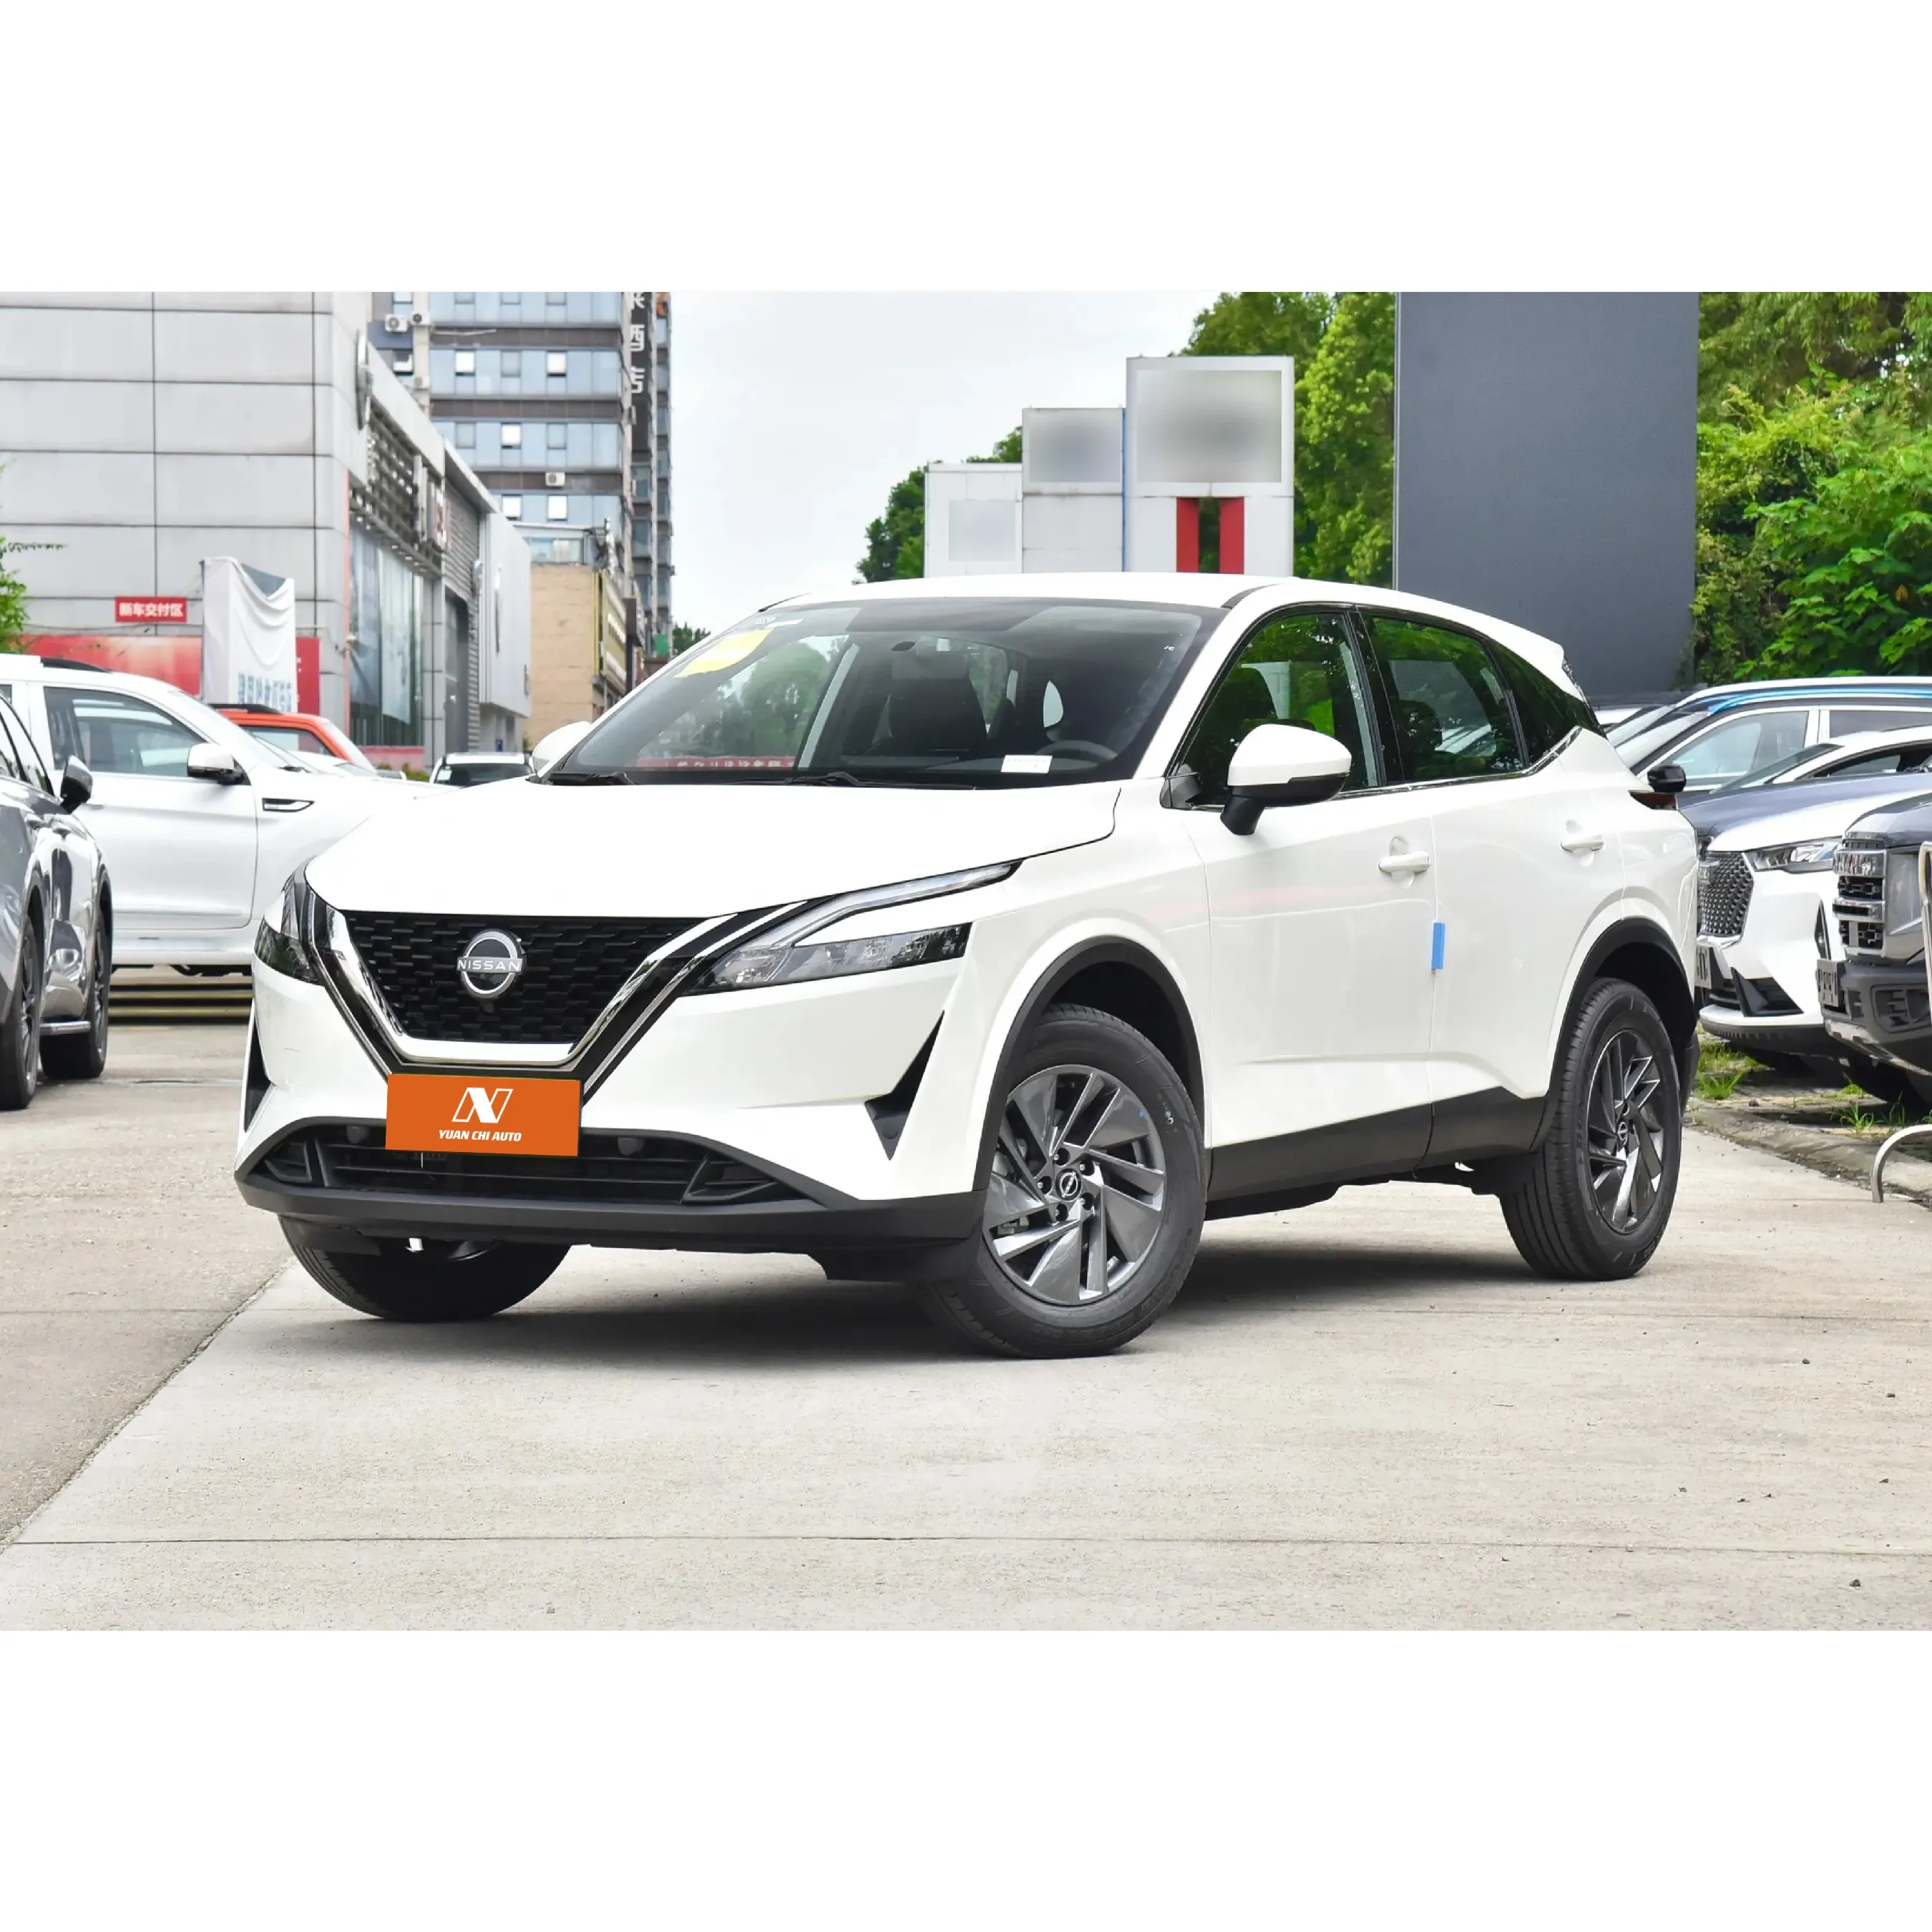 Deposito coches nuevos Nissan Qashqai 2023 1,3 T Elite Edition coche de gasolina SUV coches usados baratos SUV eléctrico hecho en China